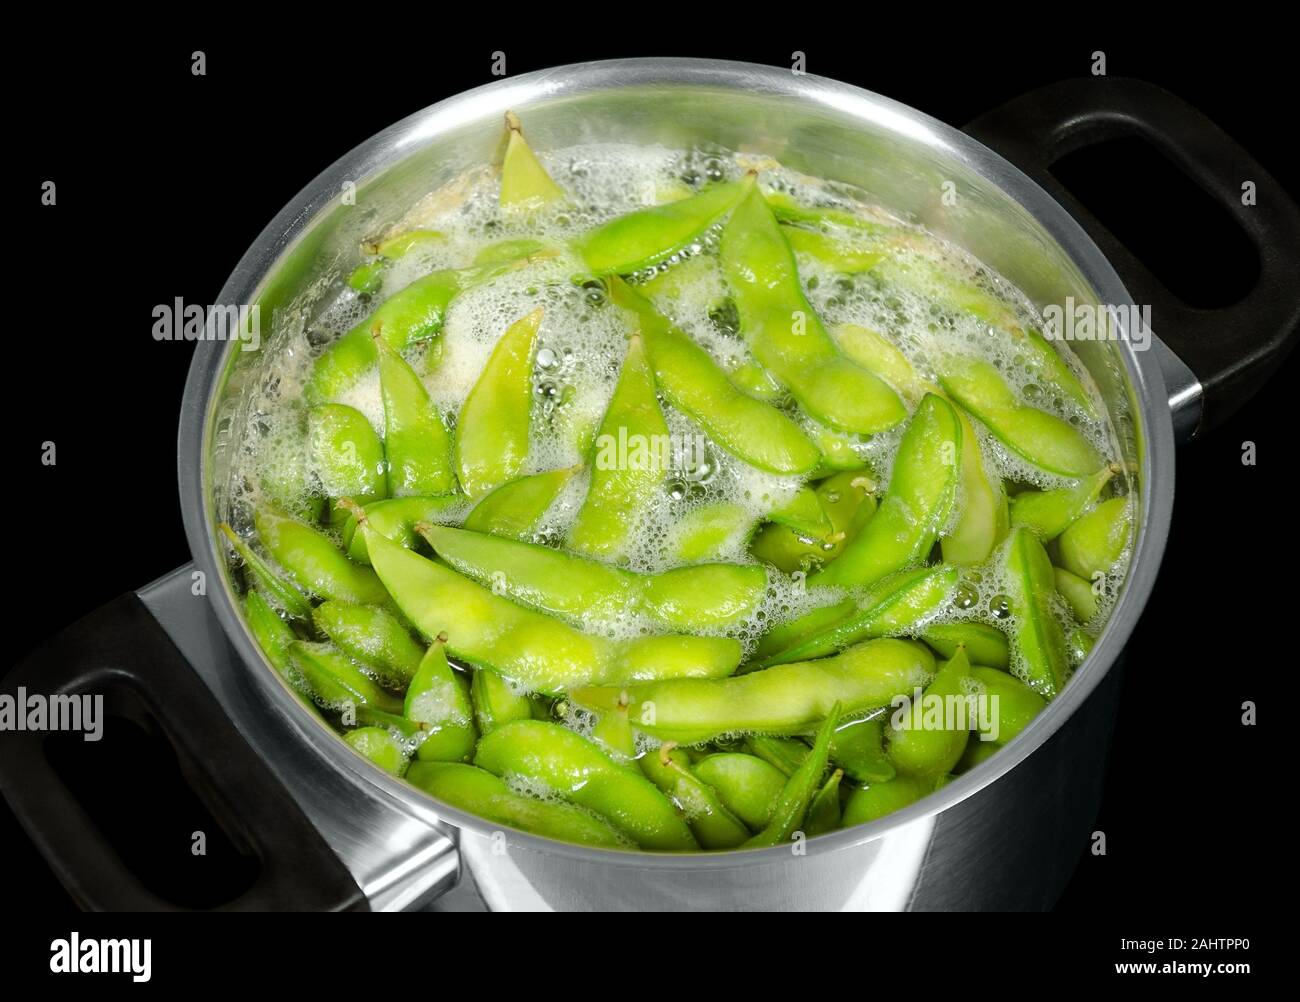 El Edamame, soja verde, maodou, en agua salada hirviendo en una olla de metal. Los granos de soja, Glycine max., una legumbre que bis ricos en proteínas. Foto de stock